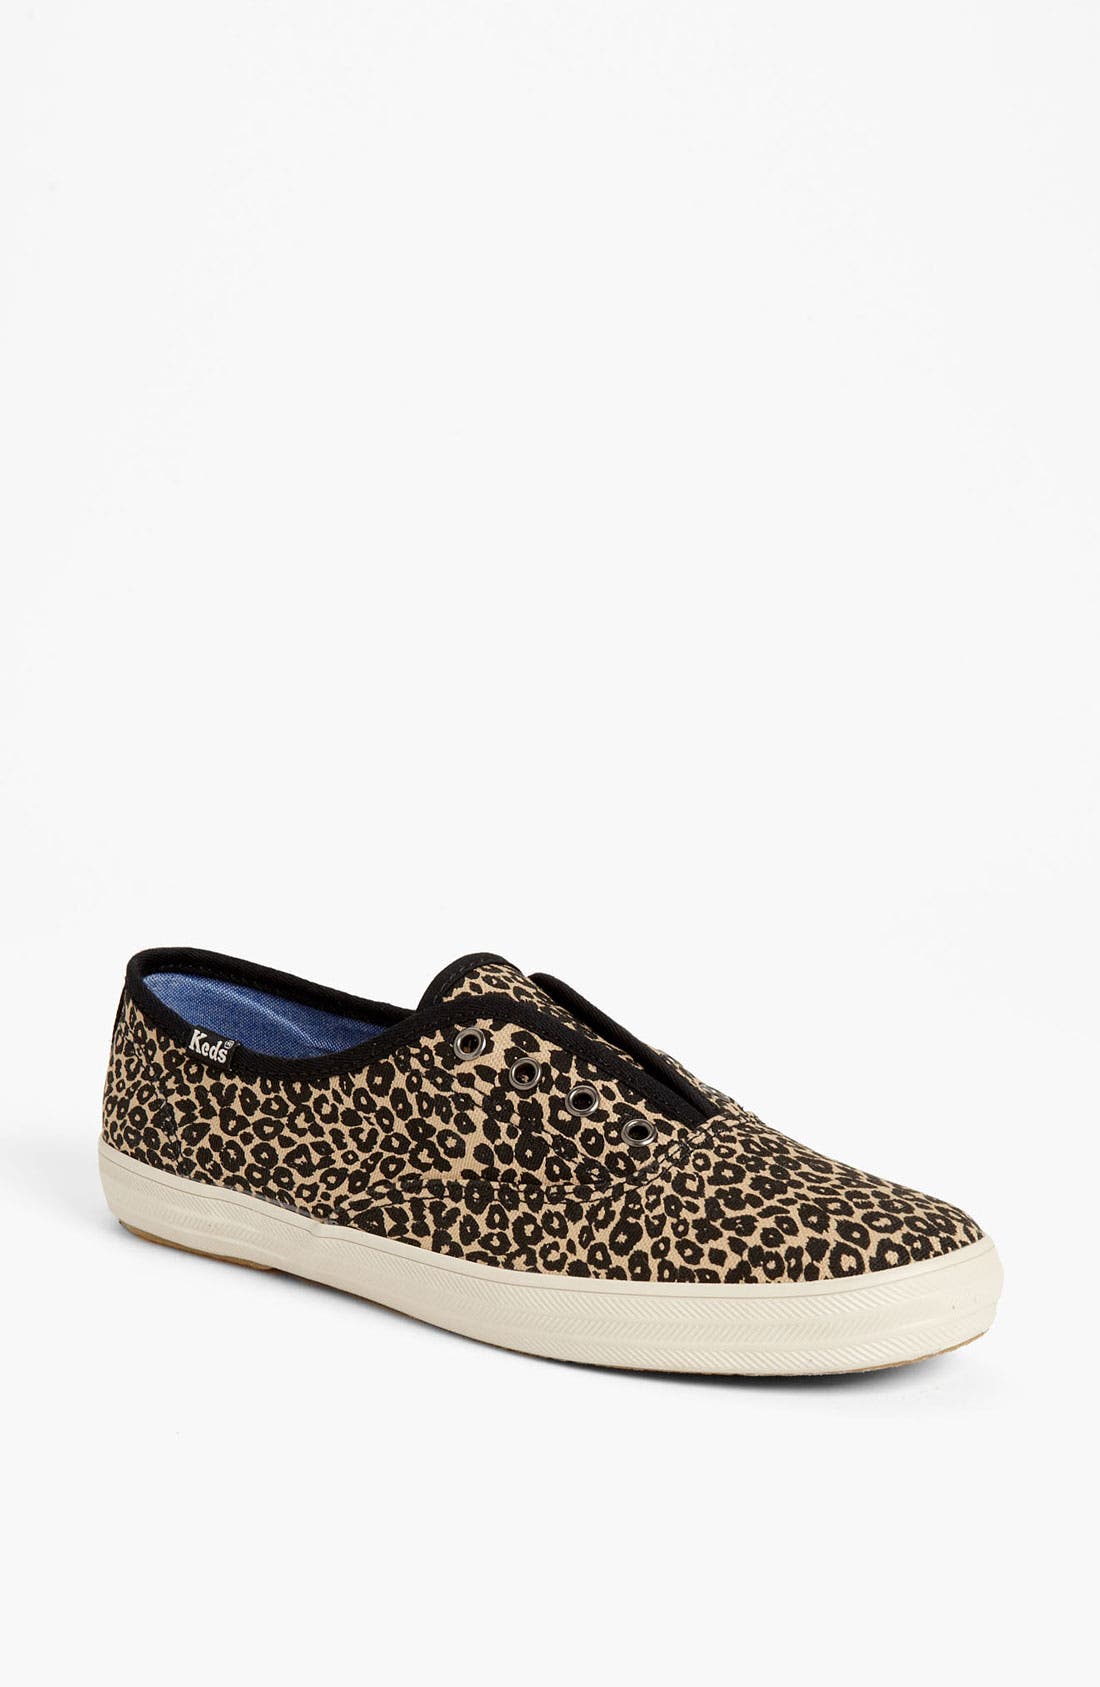 keds cheetah shoes